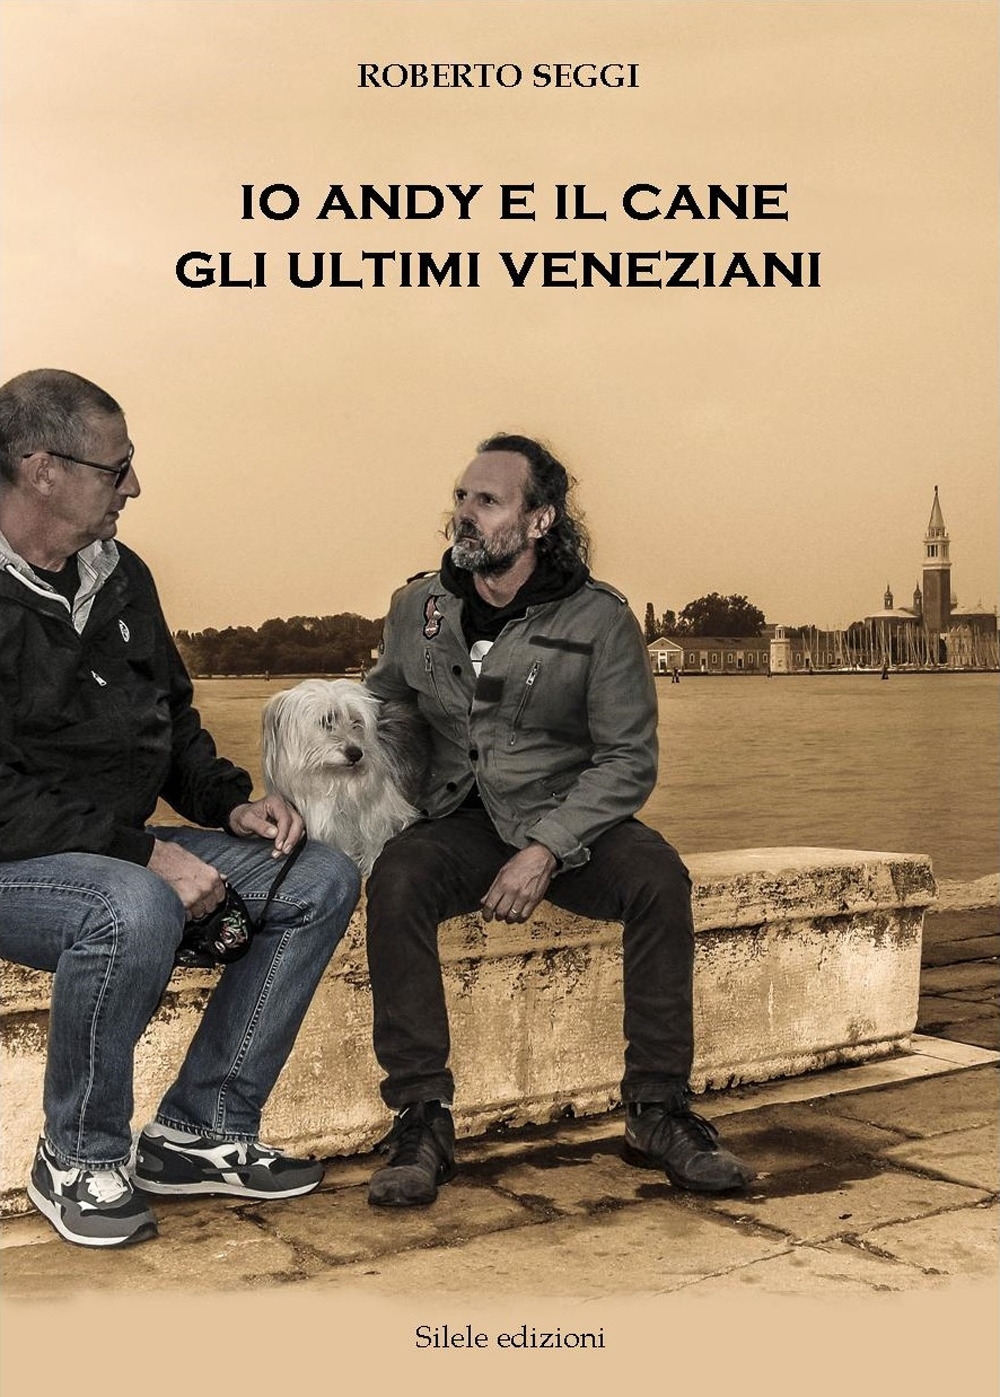 Libri Roberto Seggi - Io, Andy E Il Cane. Gli Ultimi Veneziani NUOVO SIGILLATO, EDIZIONE DEL 30/10/2017 SUBITO DISPONIBILE